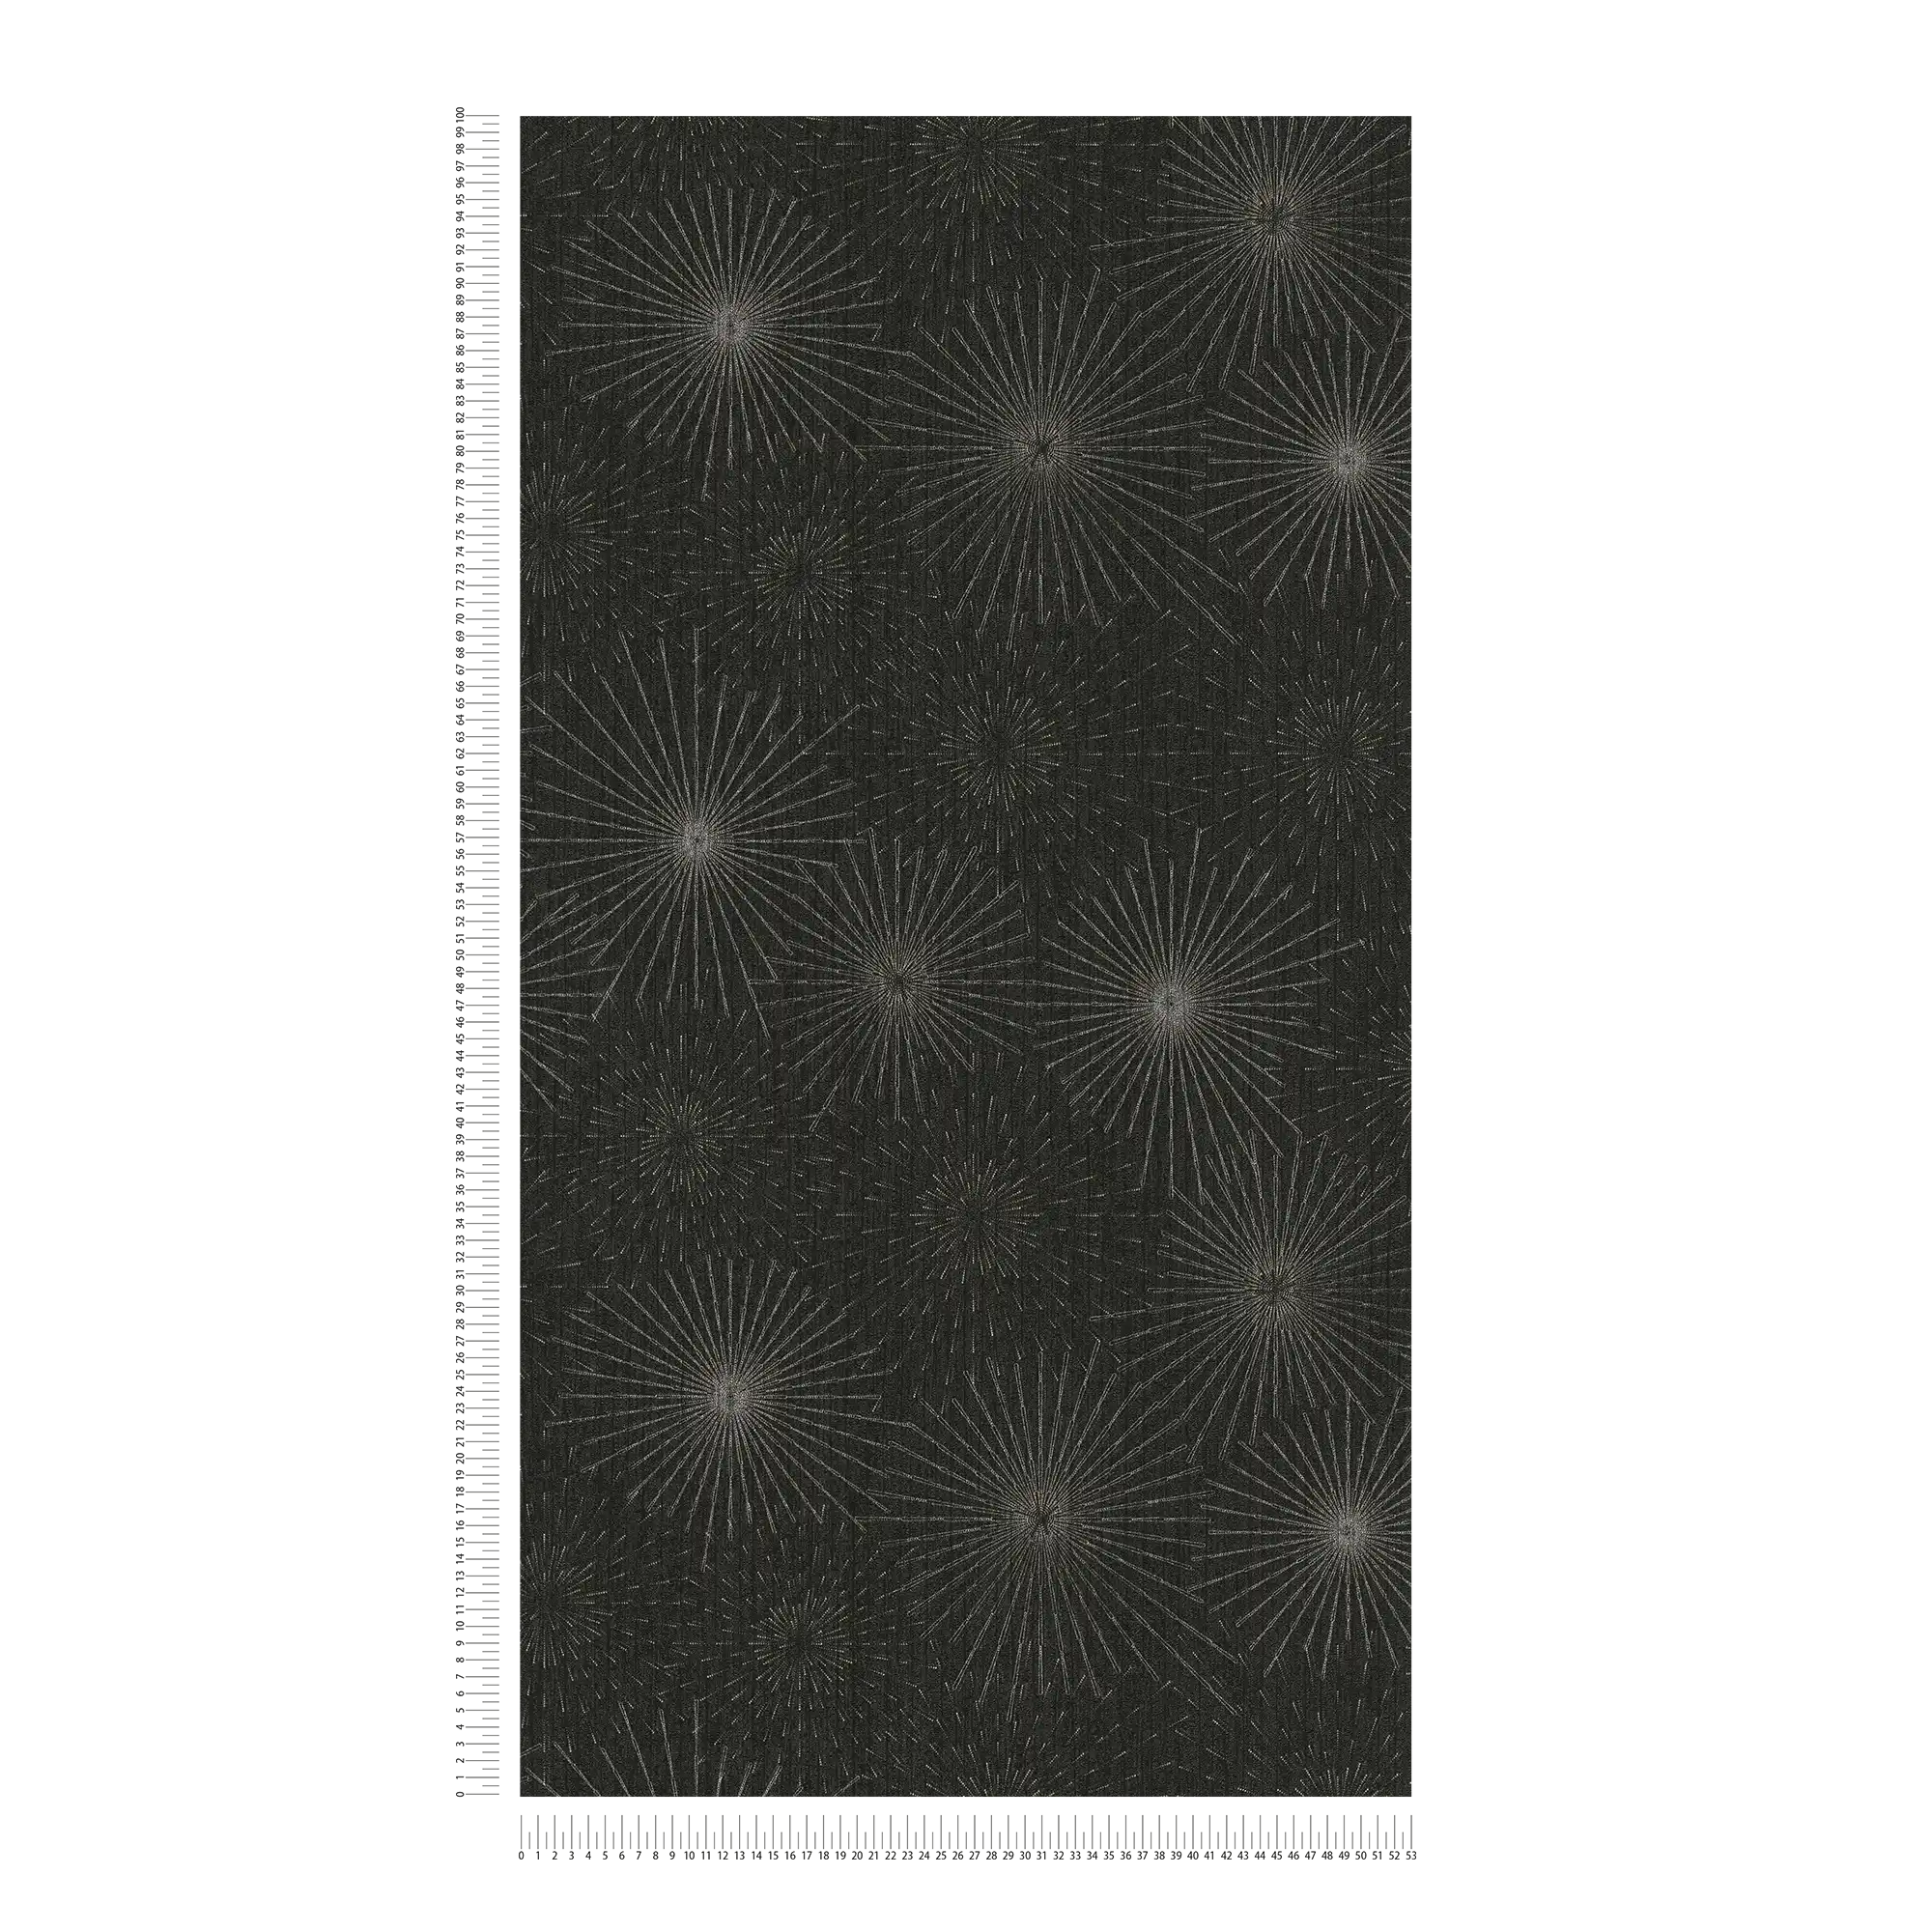             Retro behang 50s sterrensprong motief - zwart, metallic
        